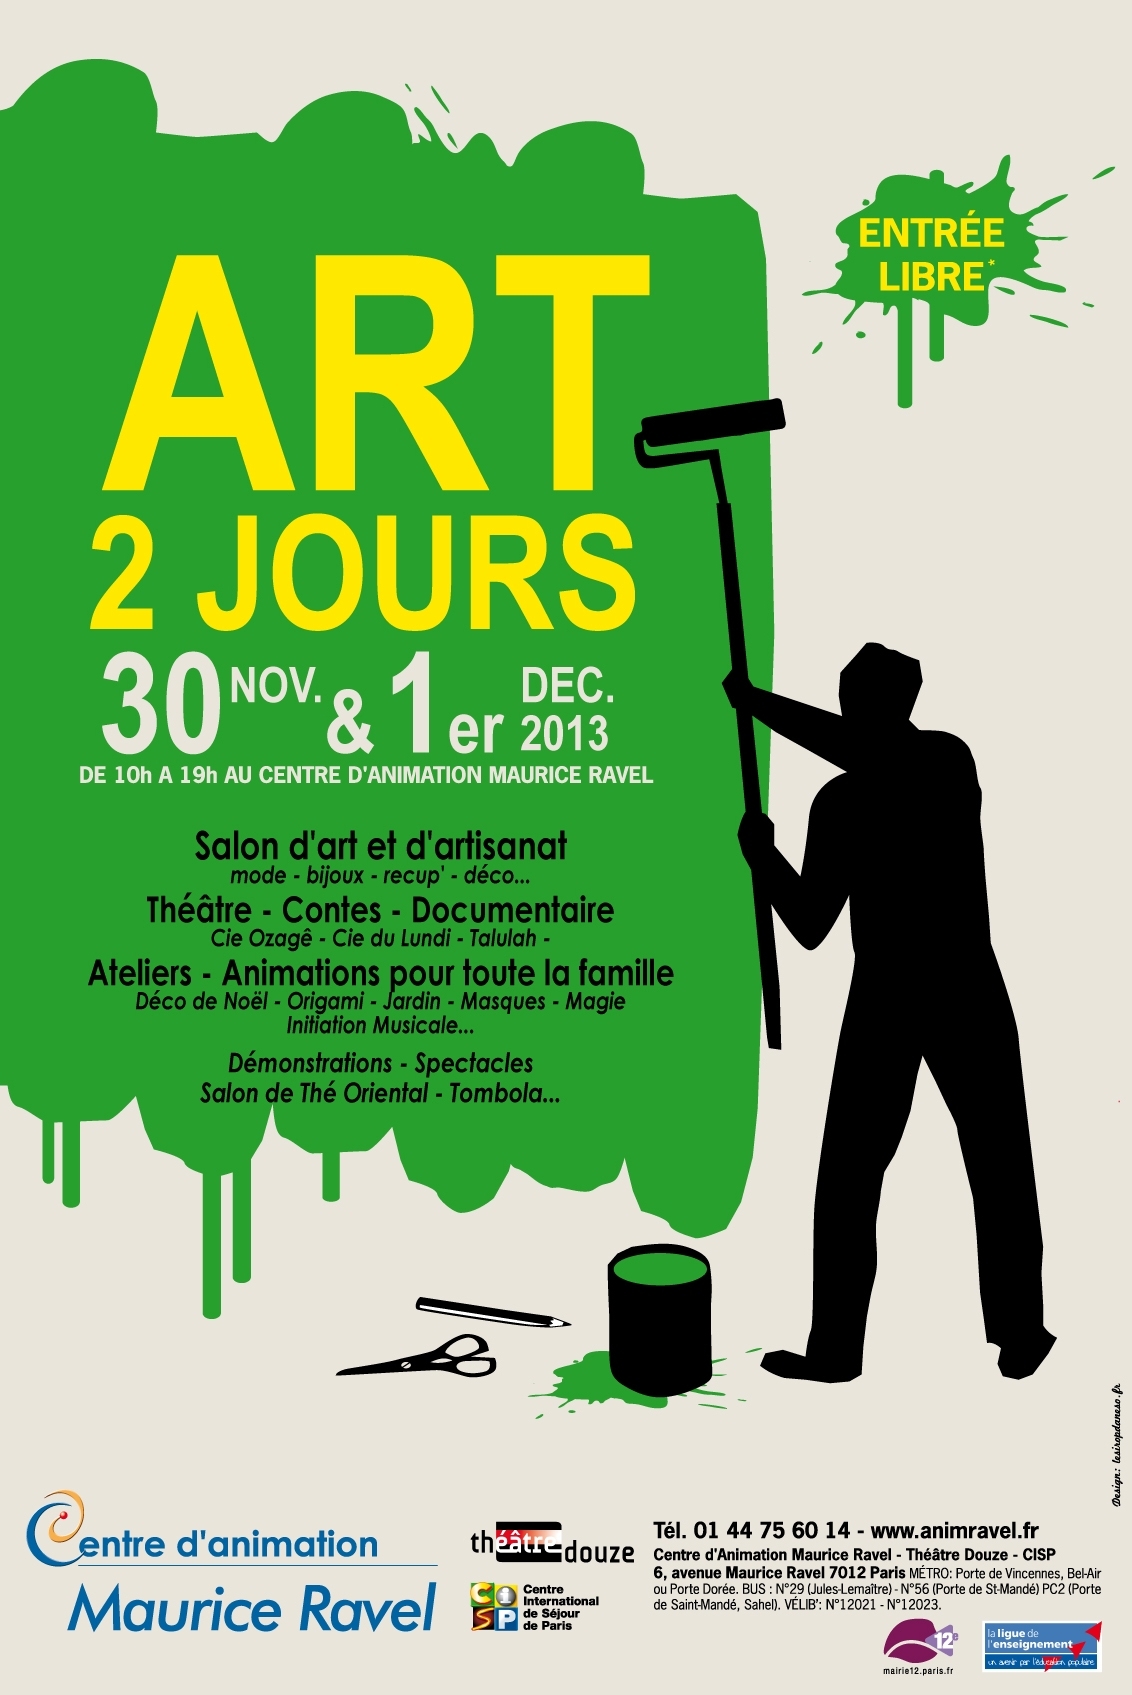 Salon d'art et d'artisanat - Art 2 jours 2013